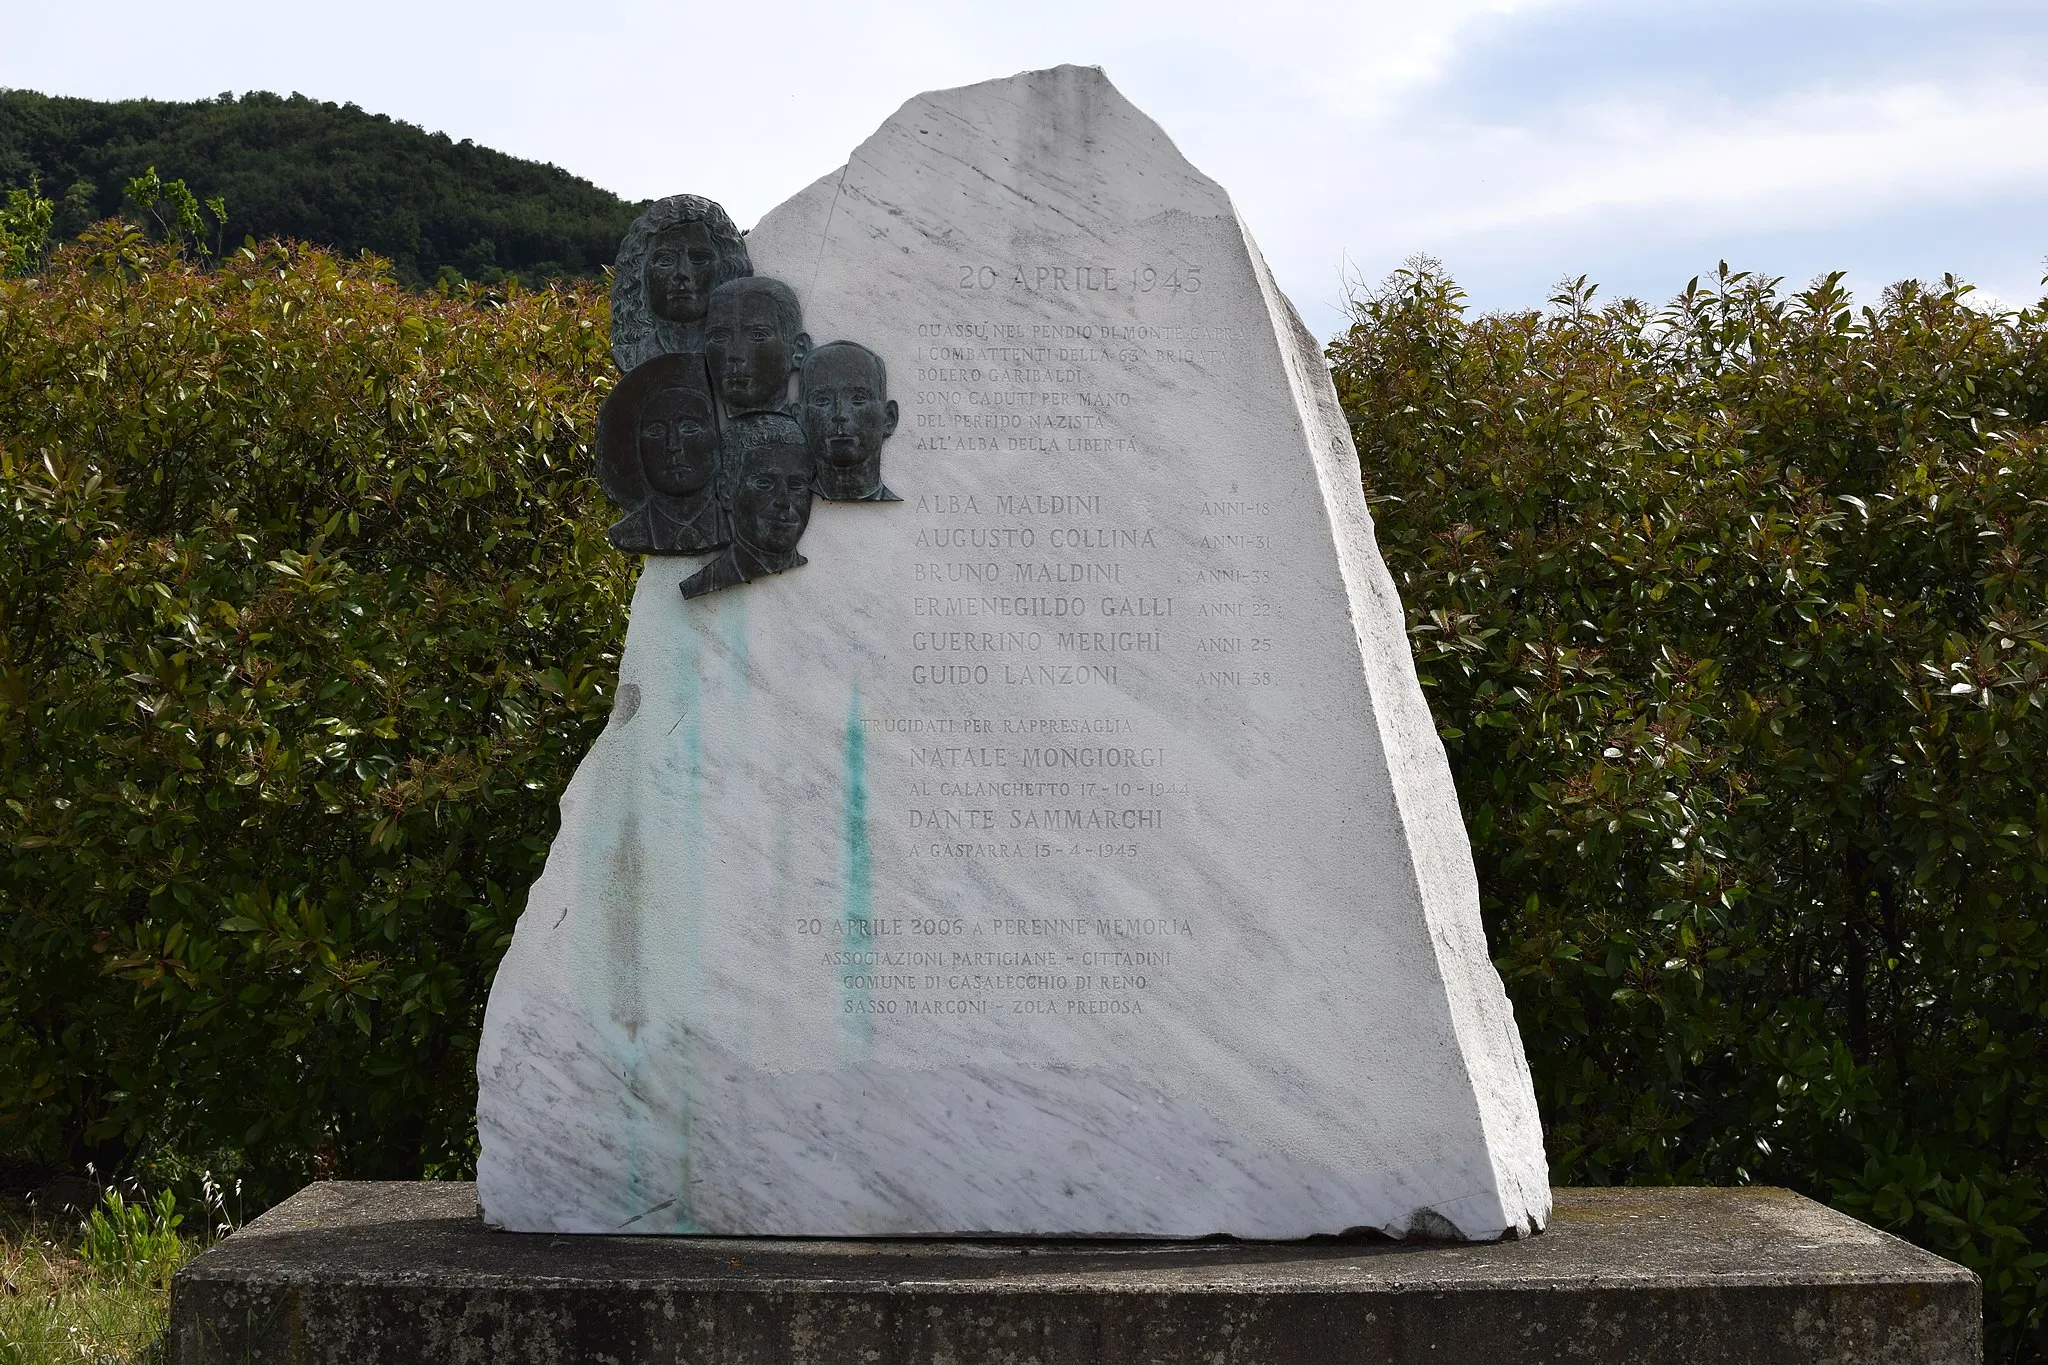 Photo showing: Cippo dedicato alla memoria dei morti della Brigata Bolero durante la battaglia di Monte Capra. I monumento è stato creato nel 2006 come emblema della Resistenza nel territorio di Zola Predosa, Casalecchio di Reno e Sasso Marconi (Bologna).